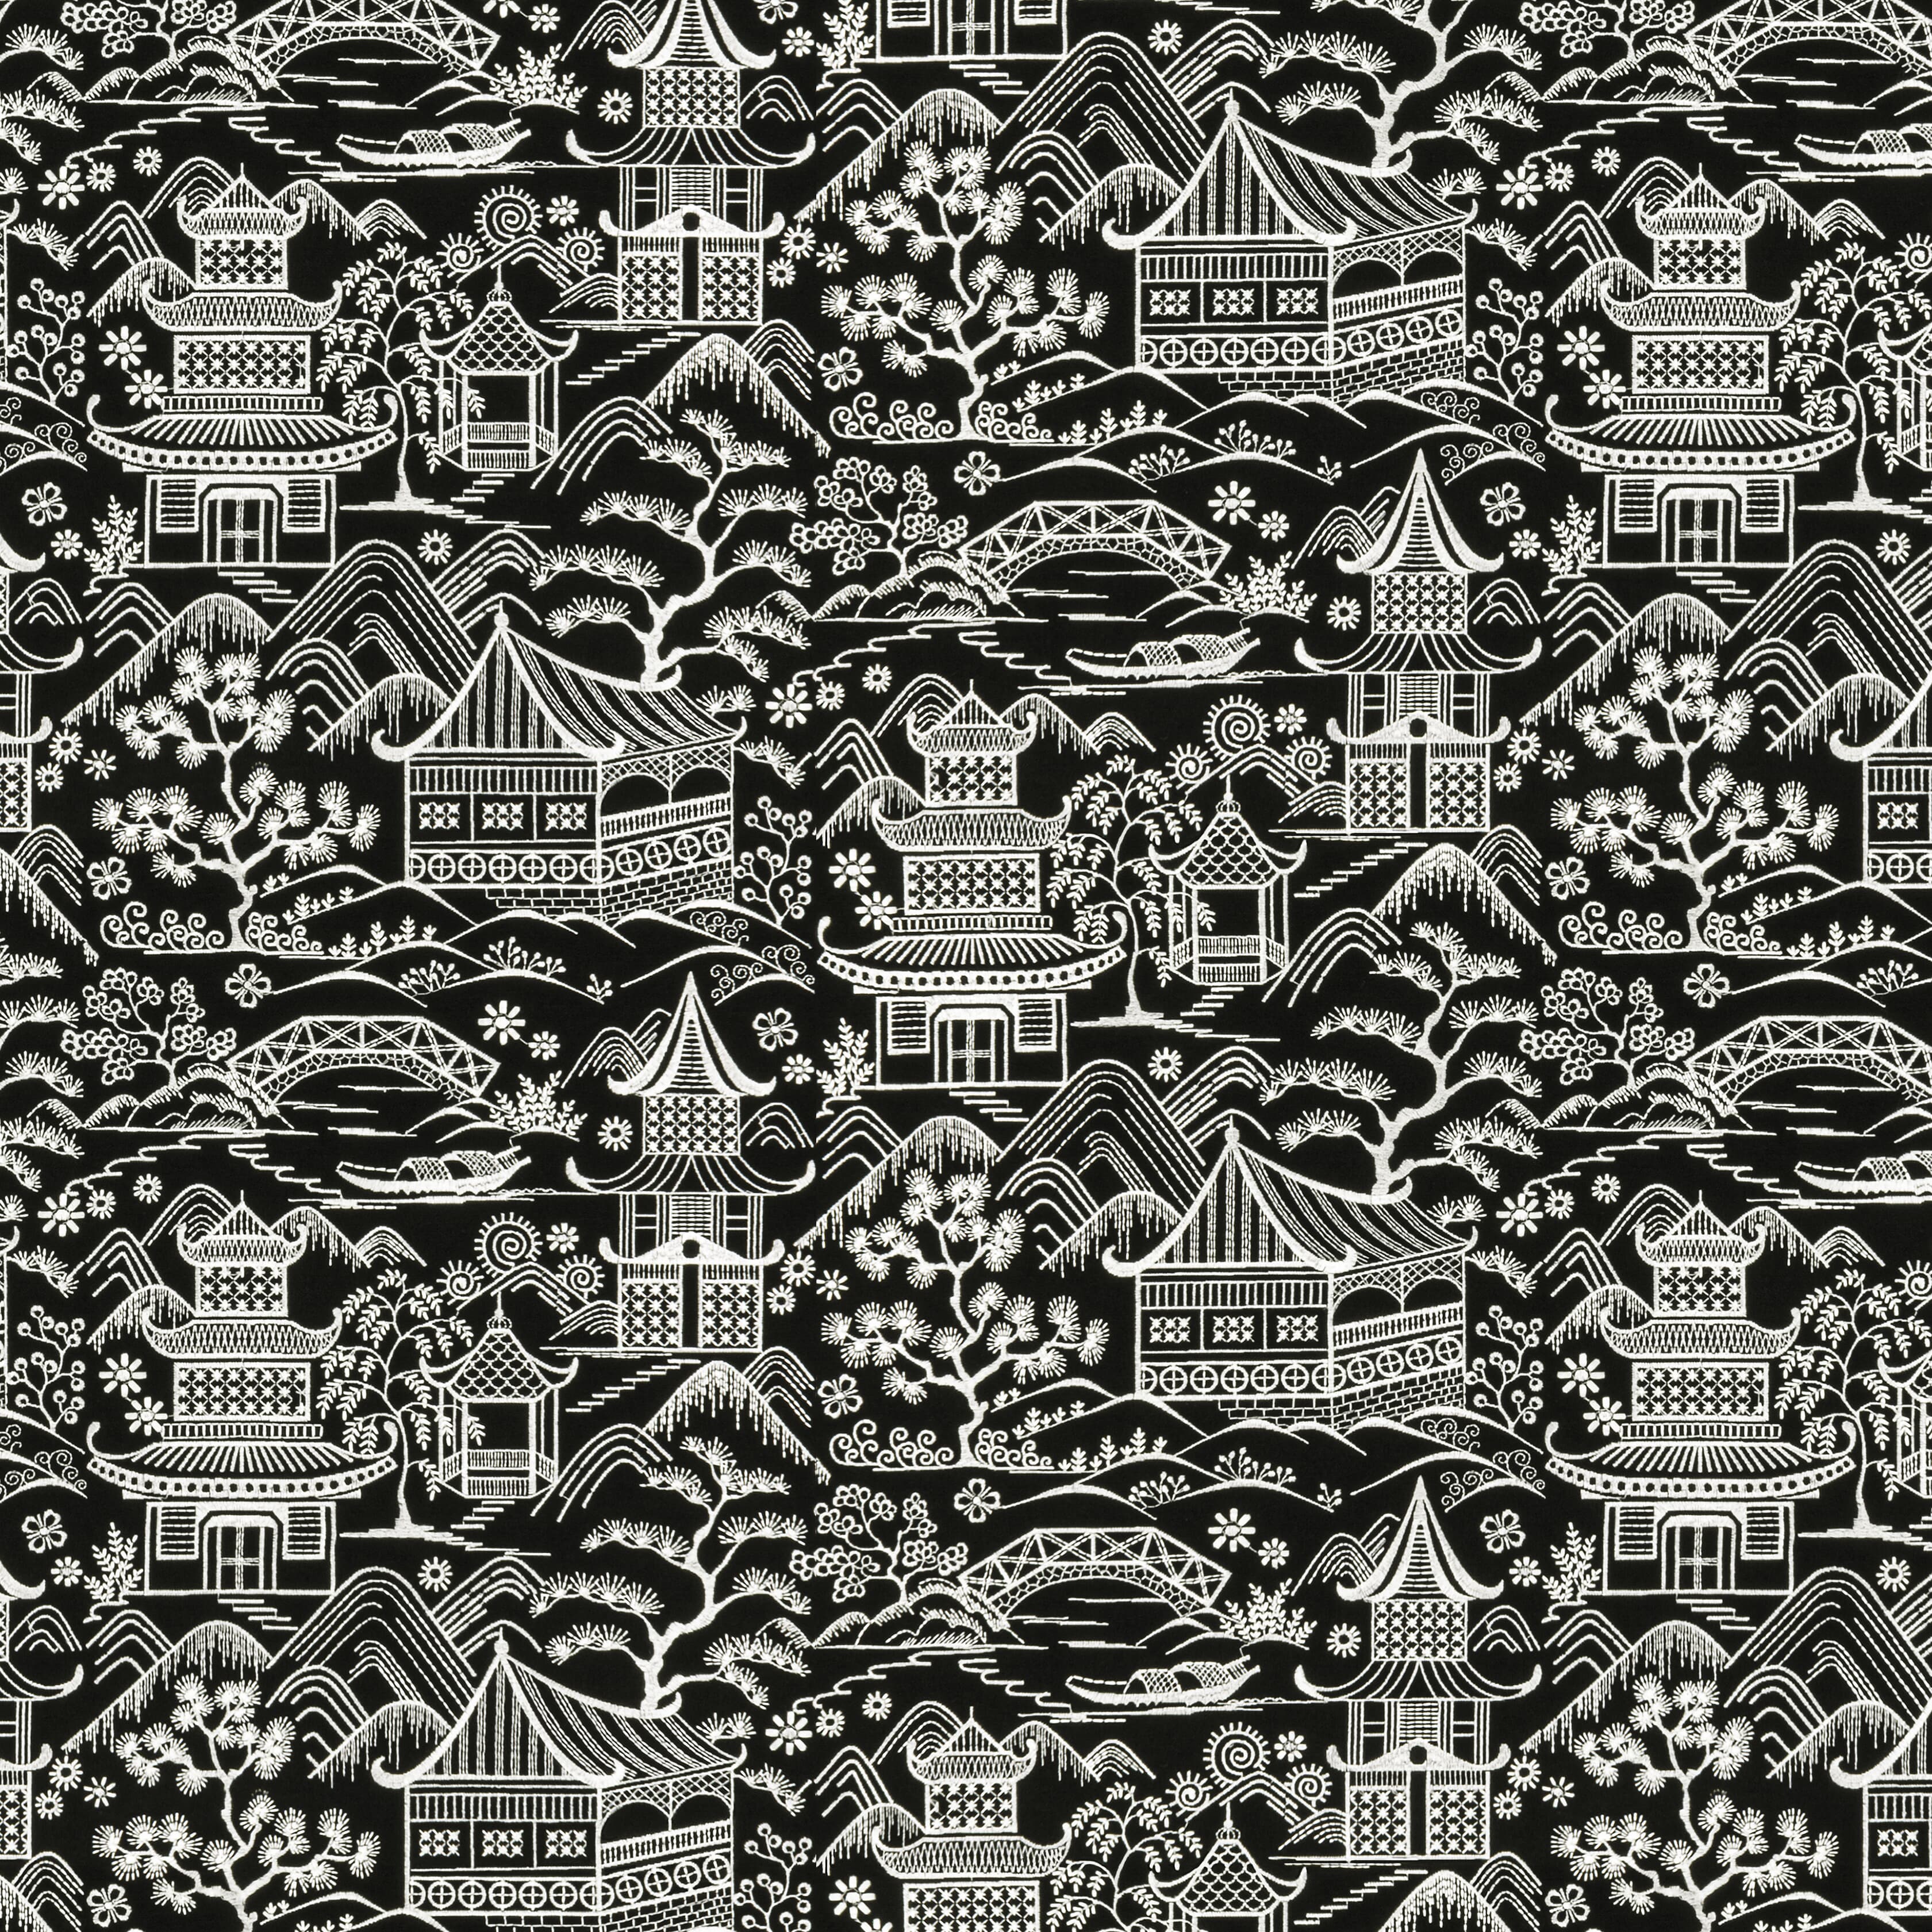 Upsala 2 Black/white by Stout Fabric